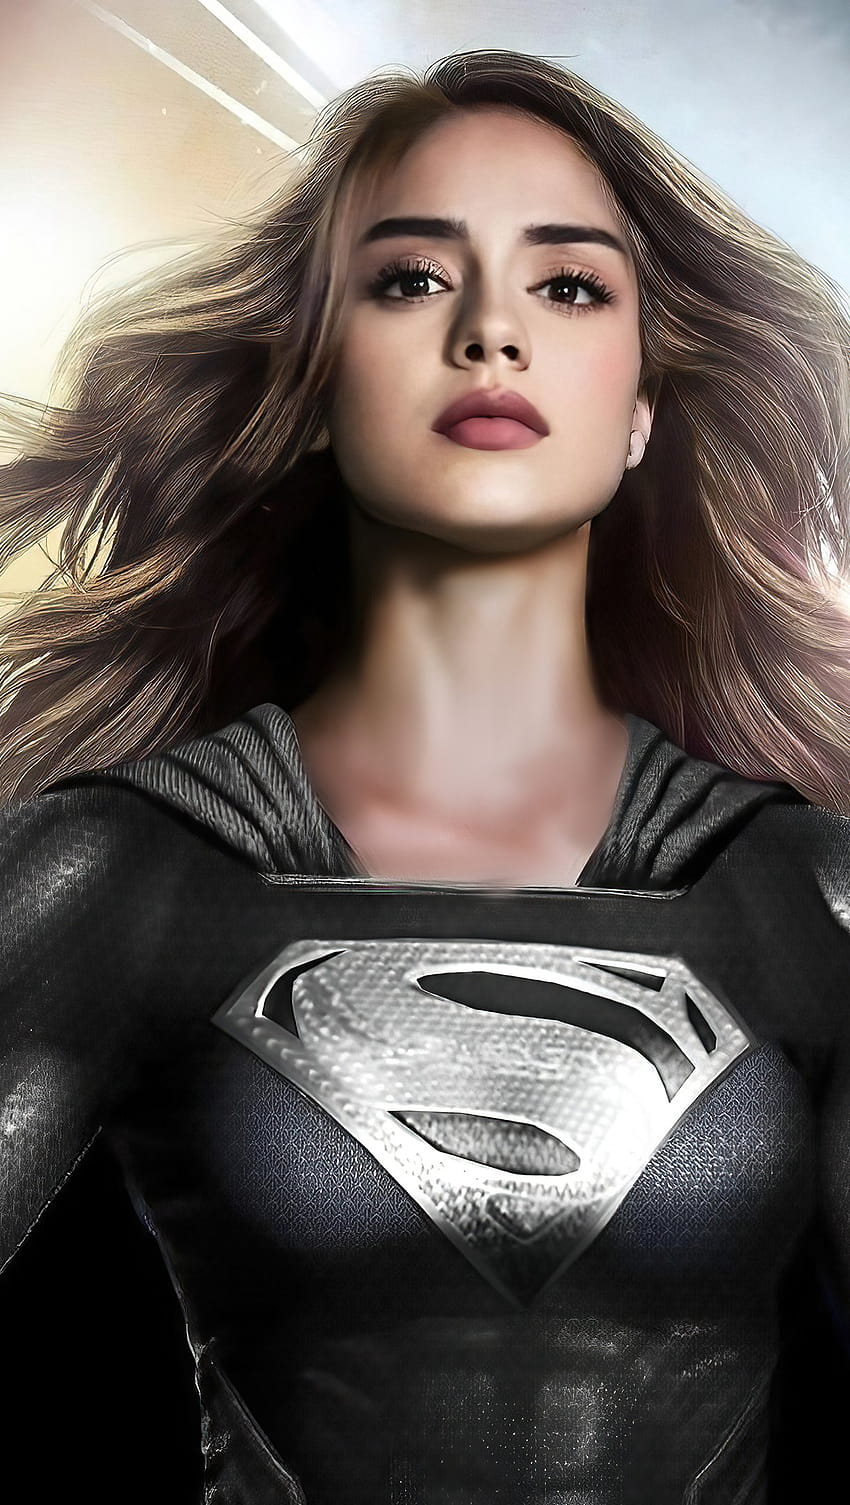 Sasha Calle sebagai Supergirl Fanart Ultra ID:7629 wallpaper ponsel HD